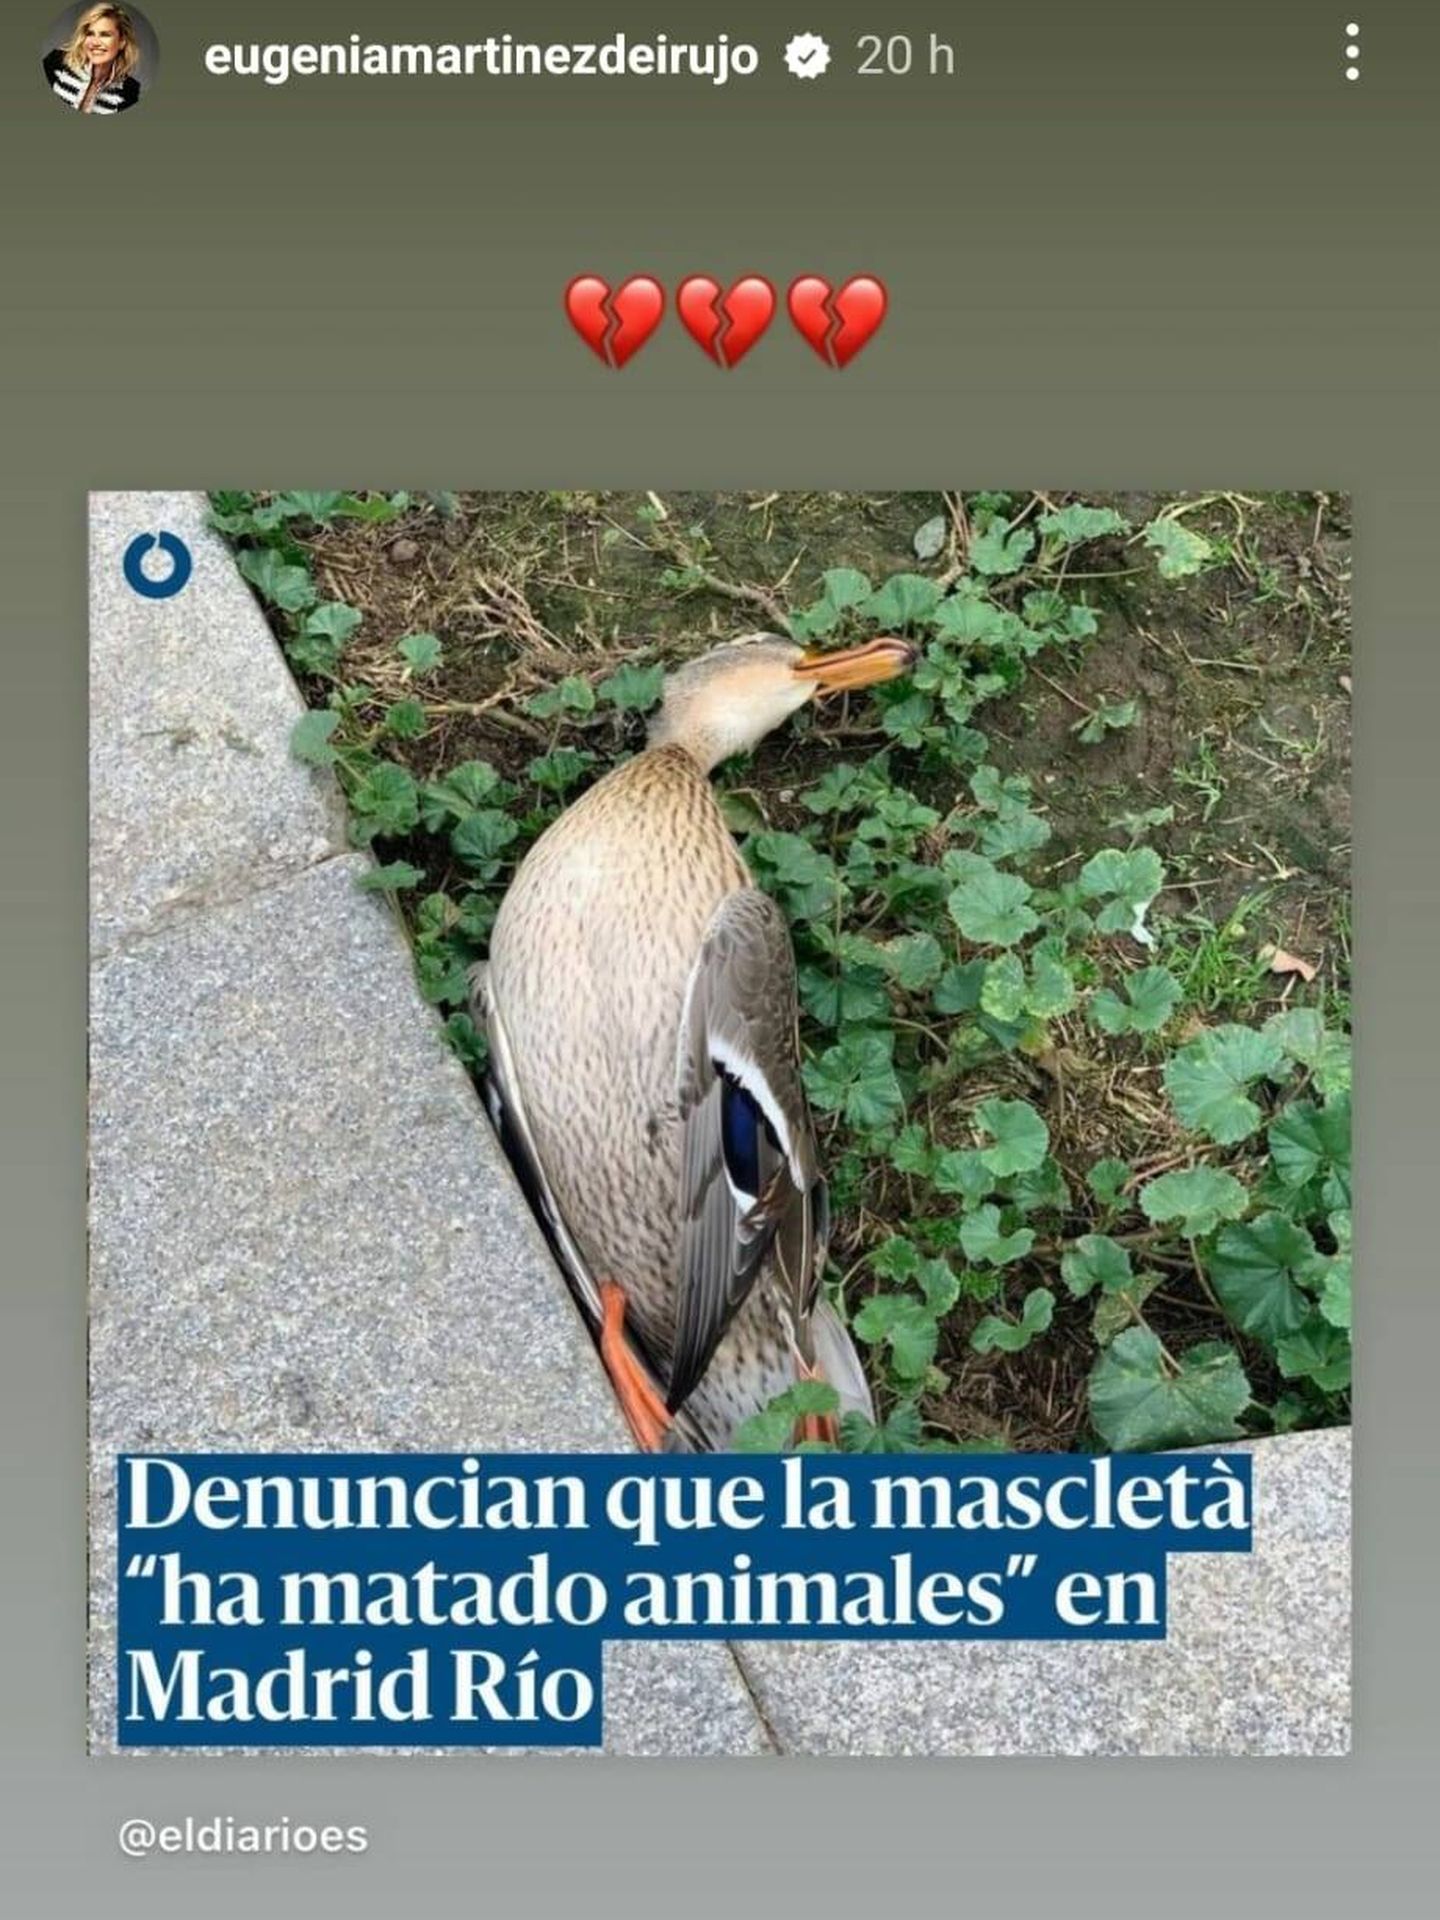 El pato encontrado muerto en las inmediaciones de Madrid Río. (Instagram/@eugeniamartinezdeirujo)